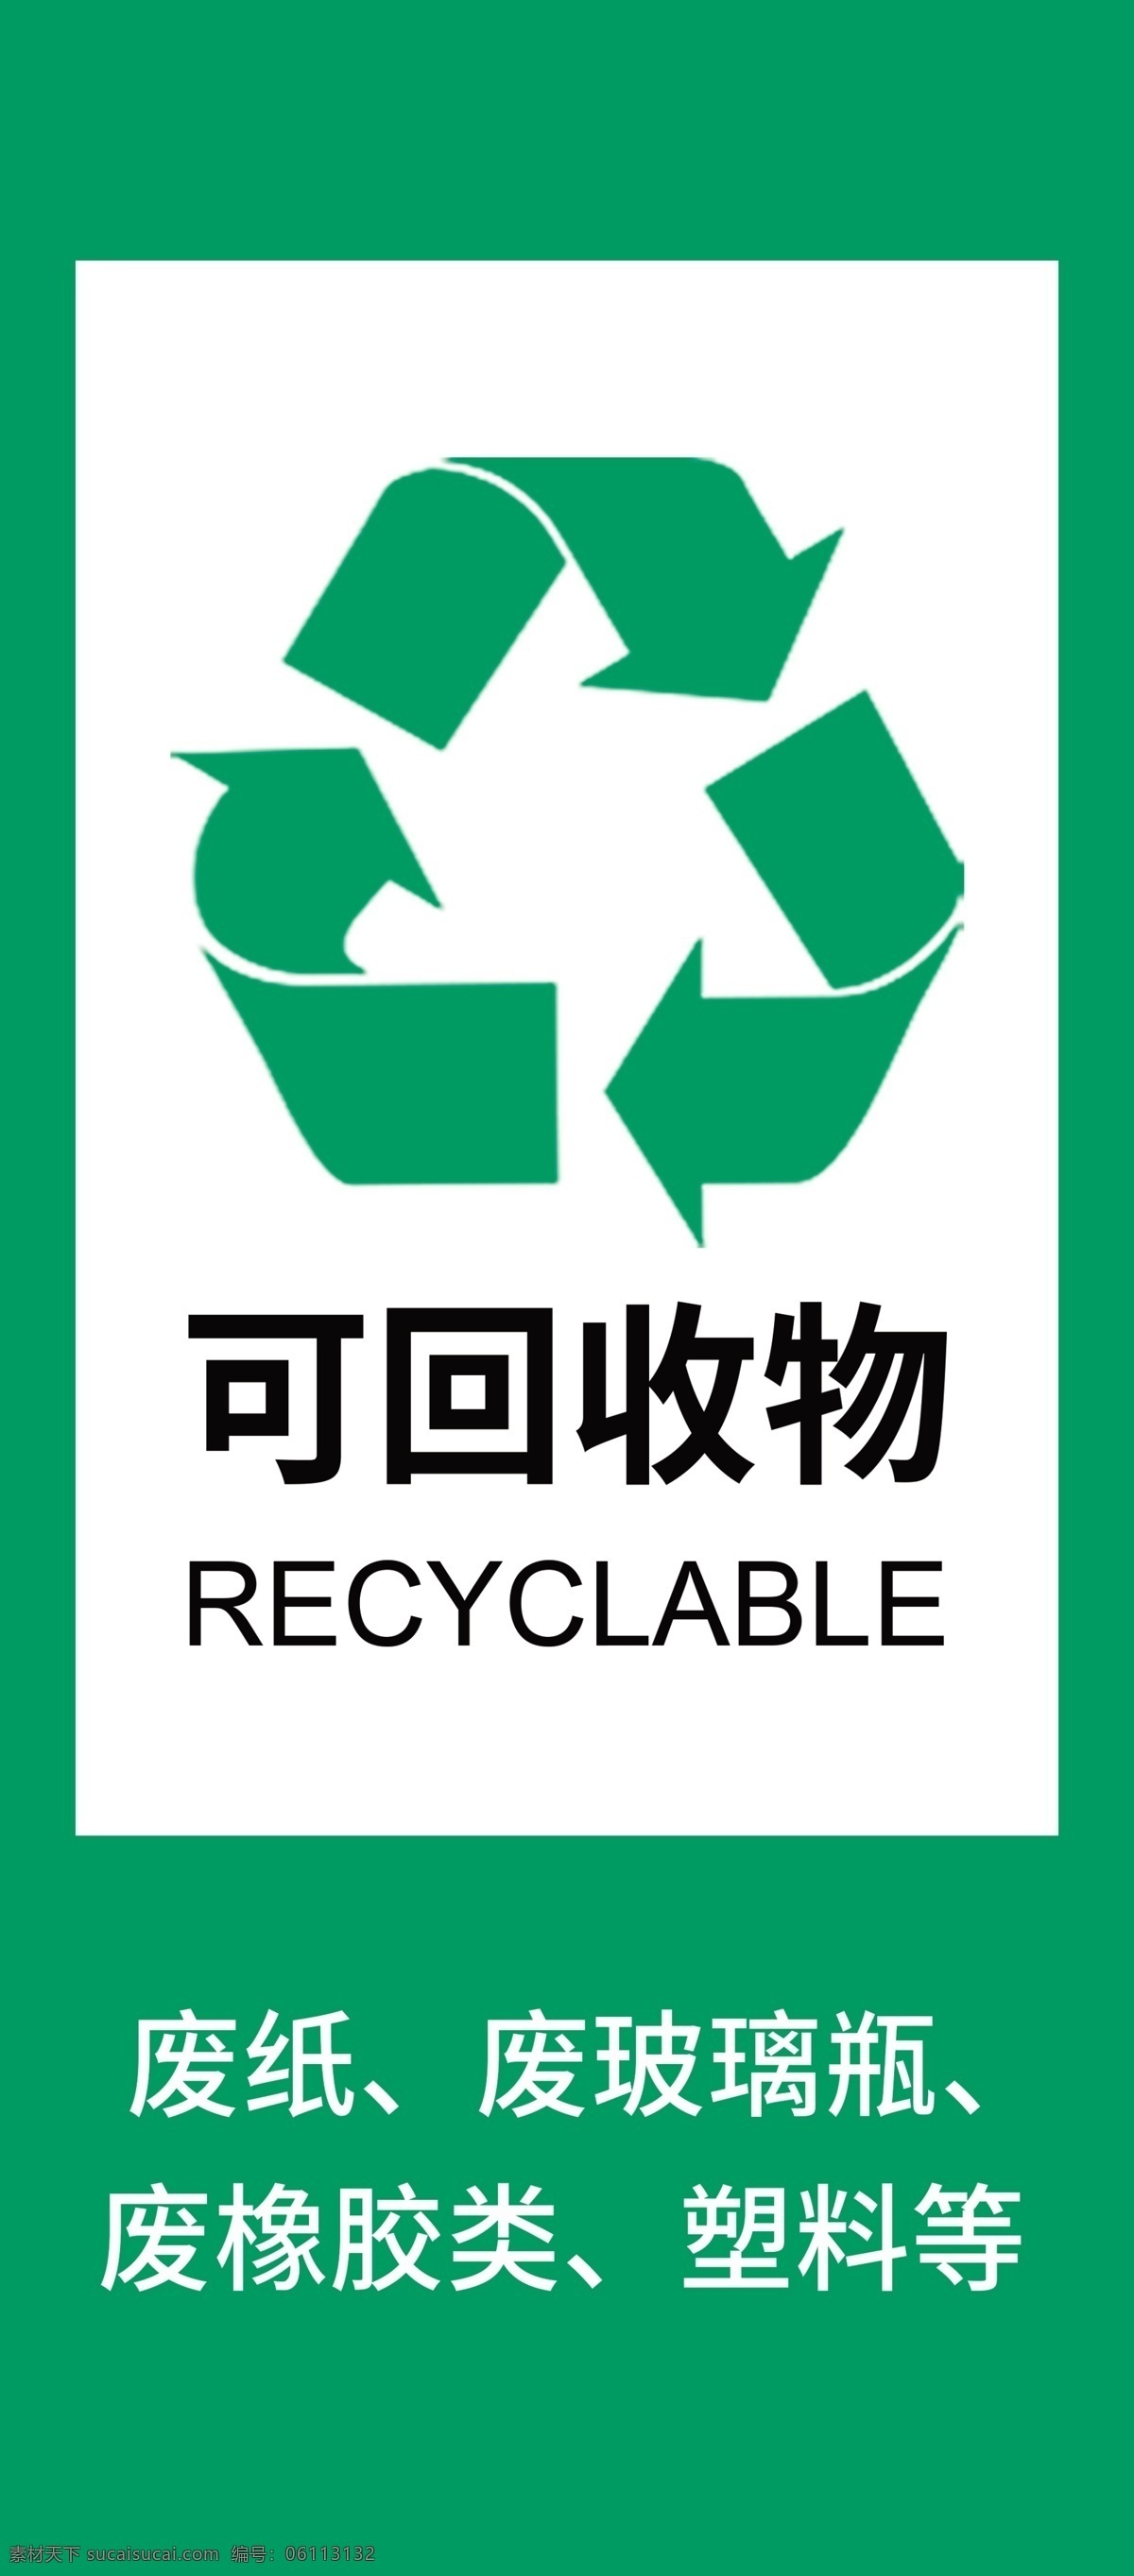 垃圾分类 公共标识 有害 垃圾 垃圾桶标识 环境保护 废电池 分层